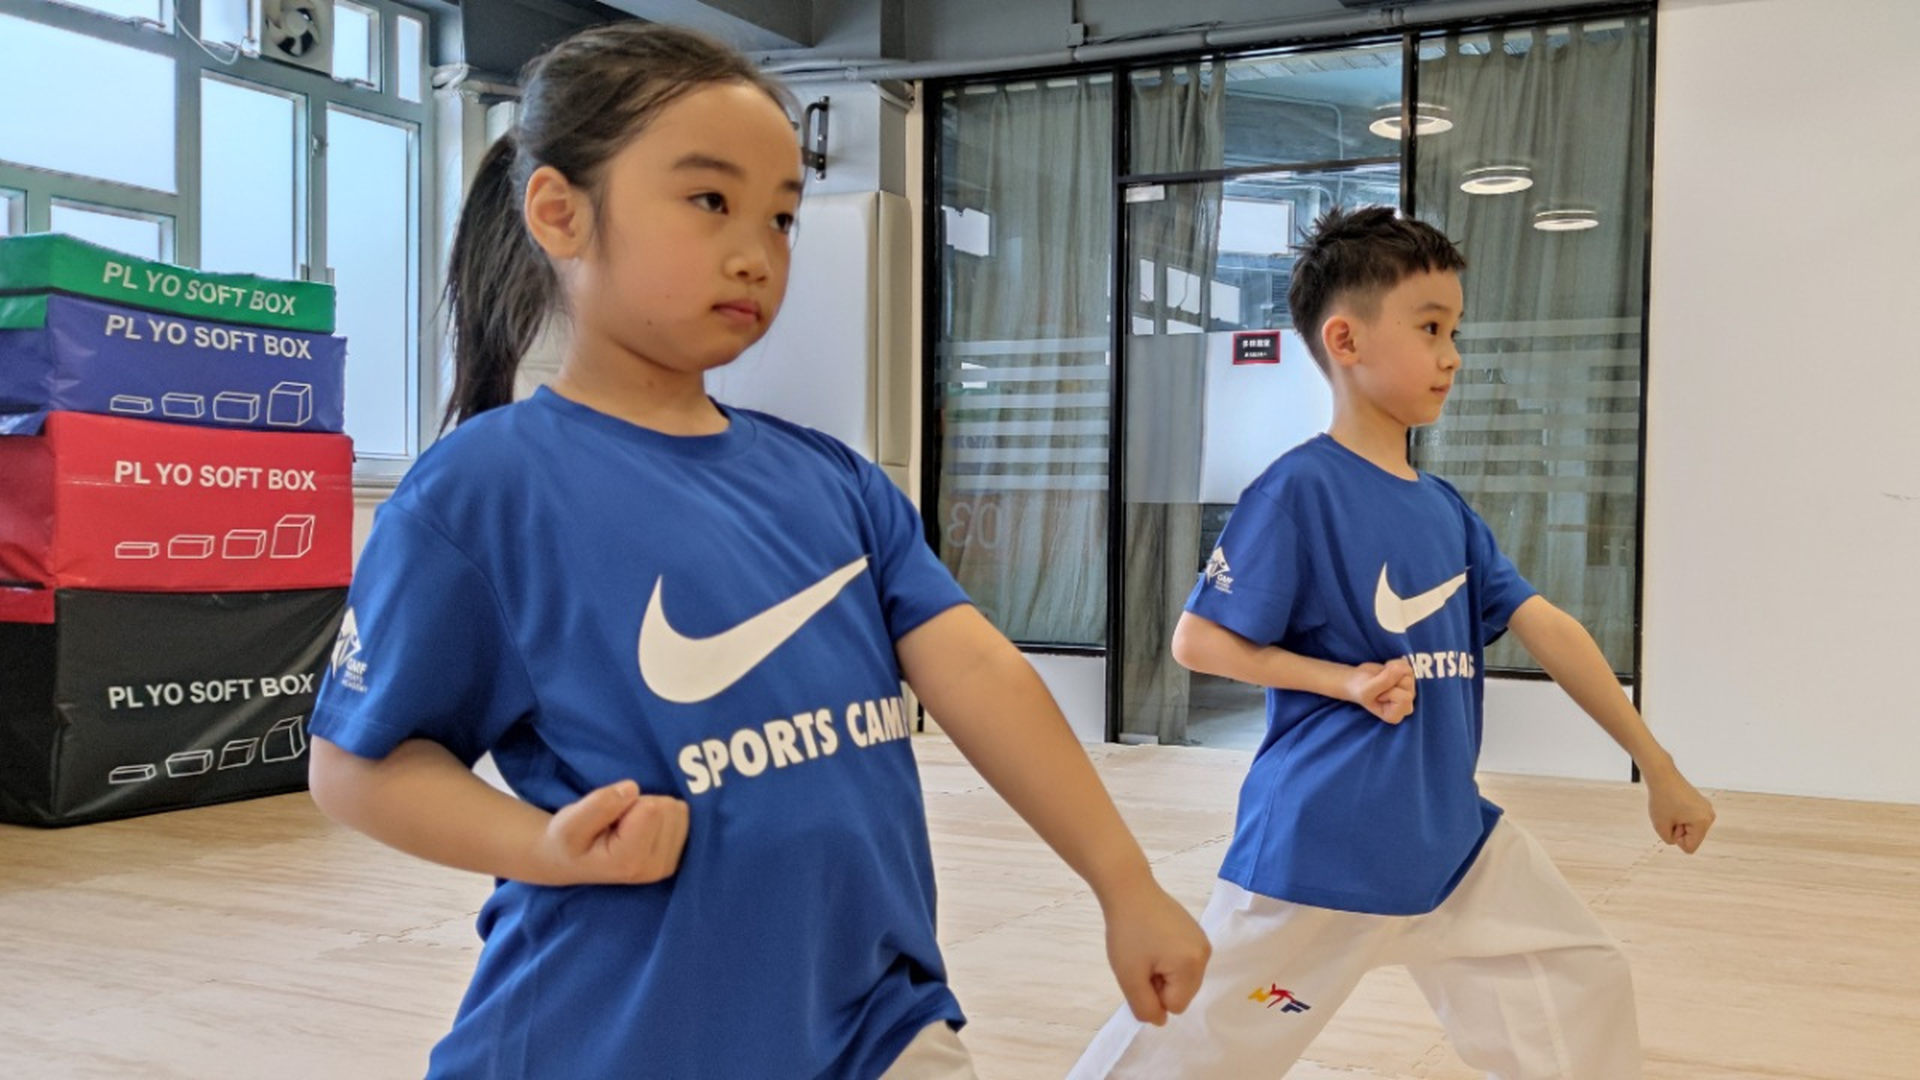 NIKE SPORTS CAMPS 兒童跆拳道班 2023 (6-12歲)